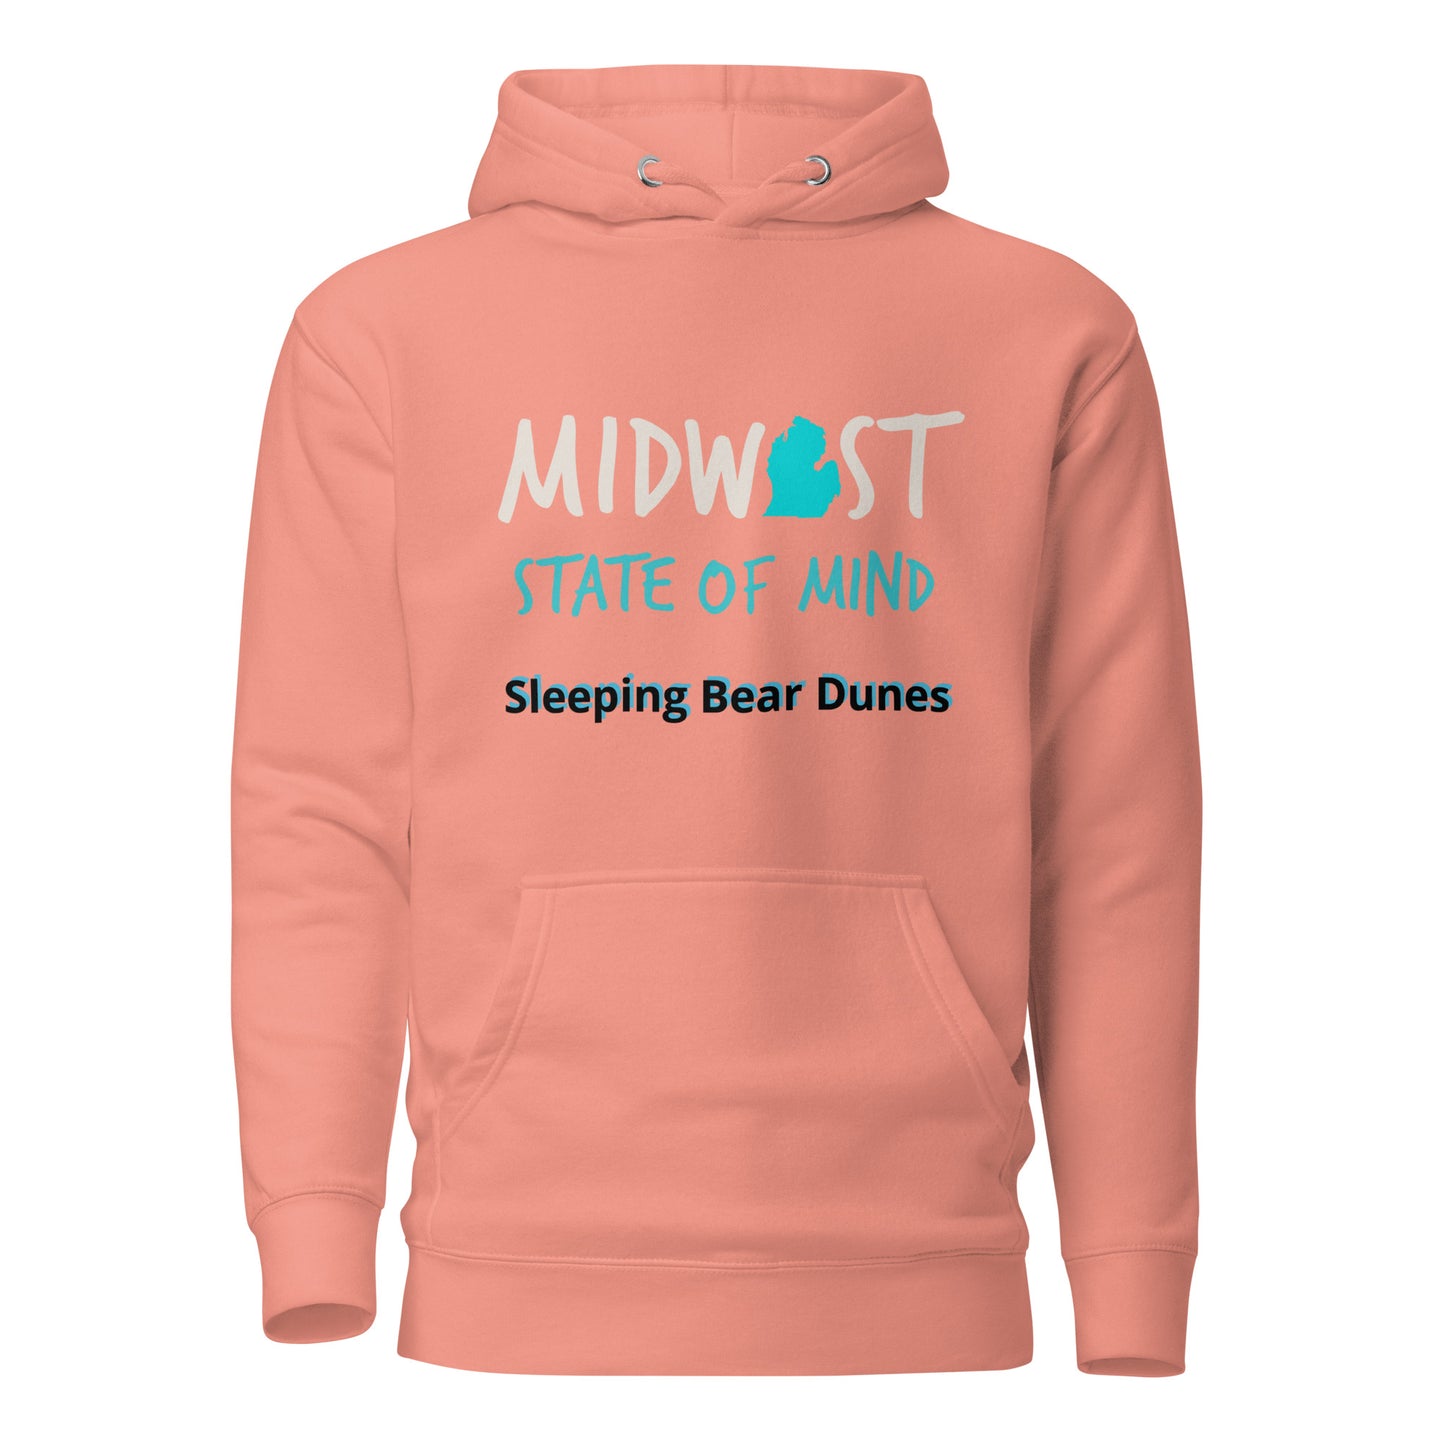 Sleeping Bear Dunes Midwest State of Mind Unisex Hoodie